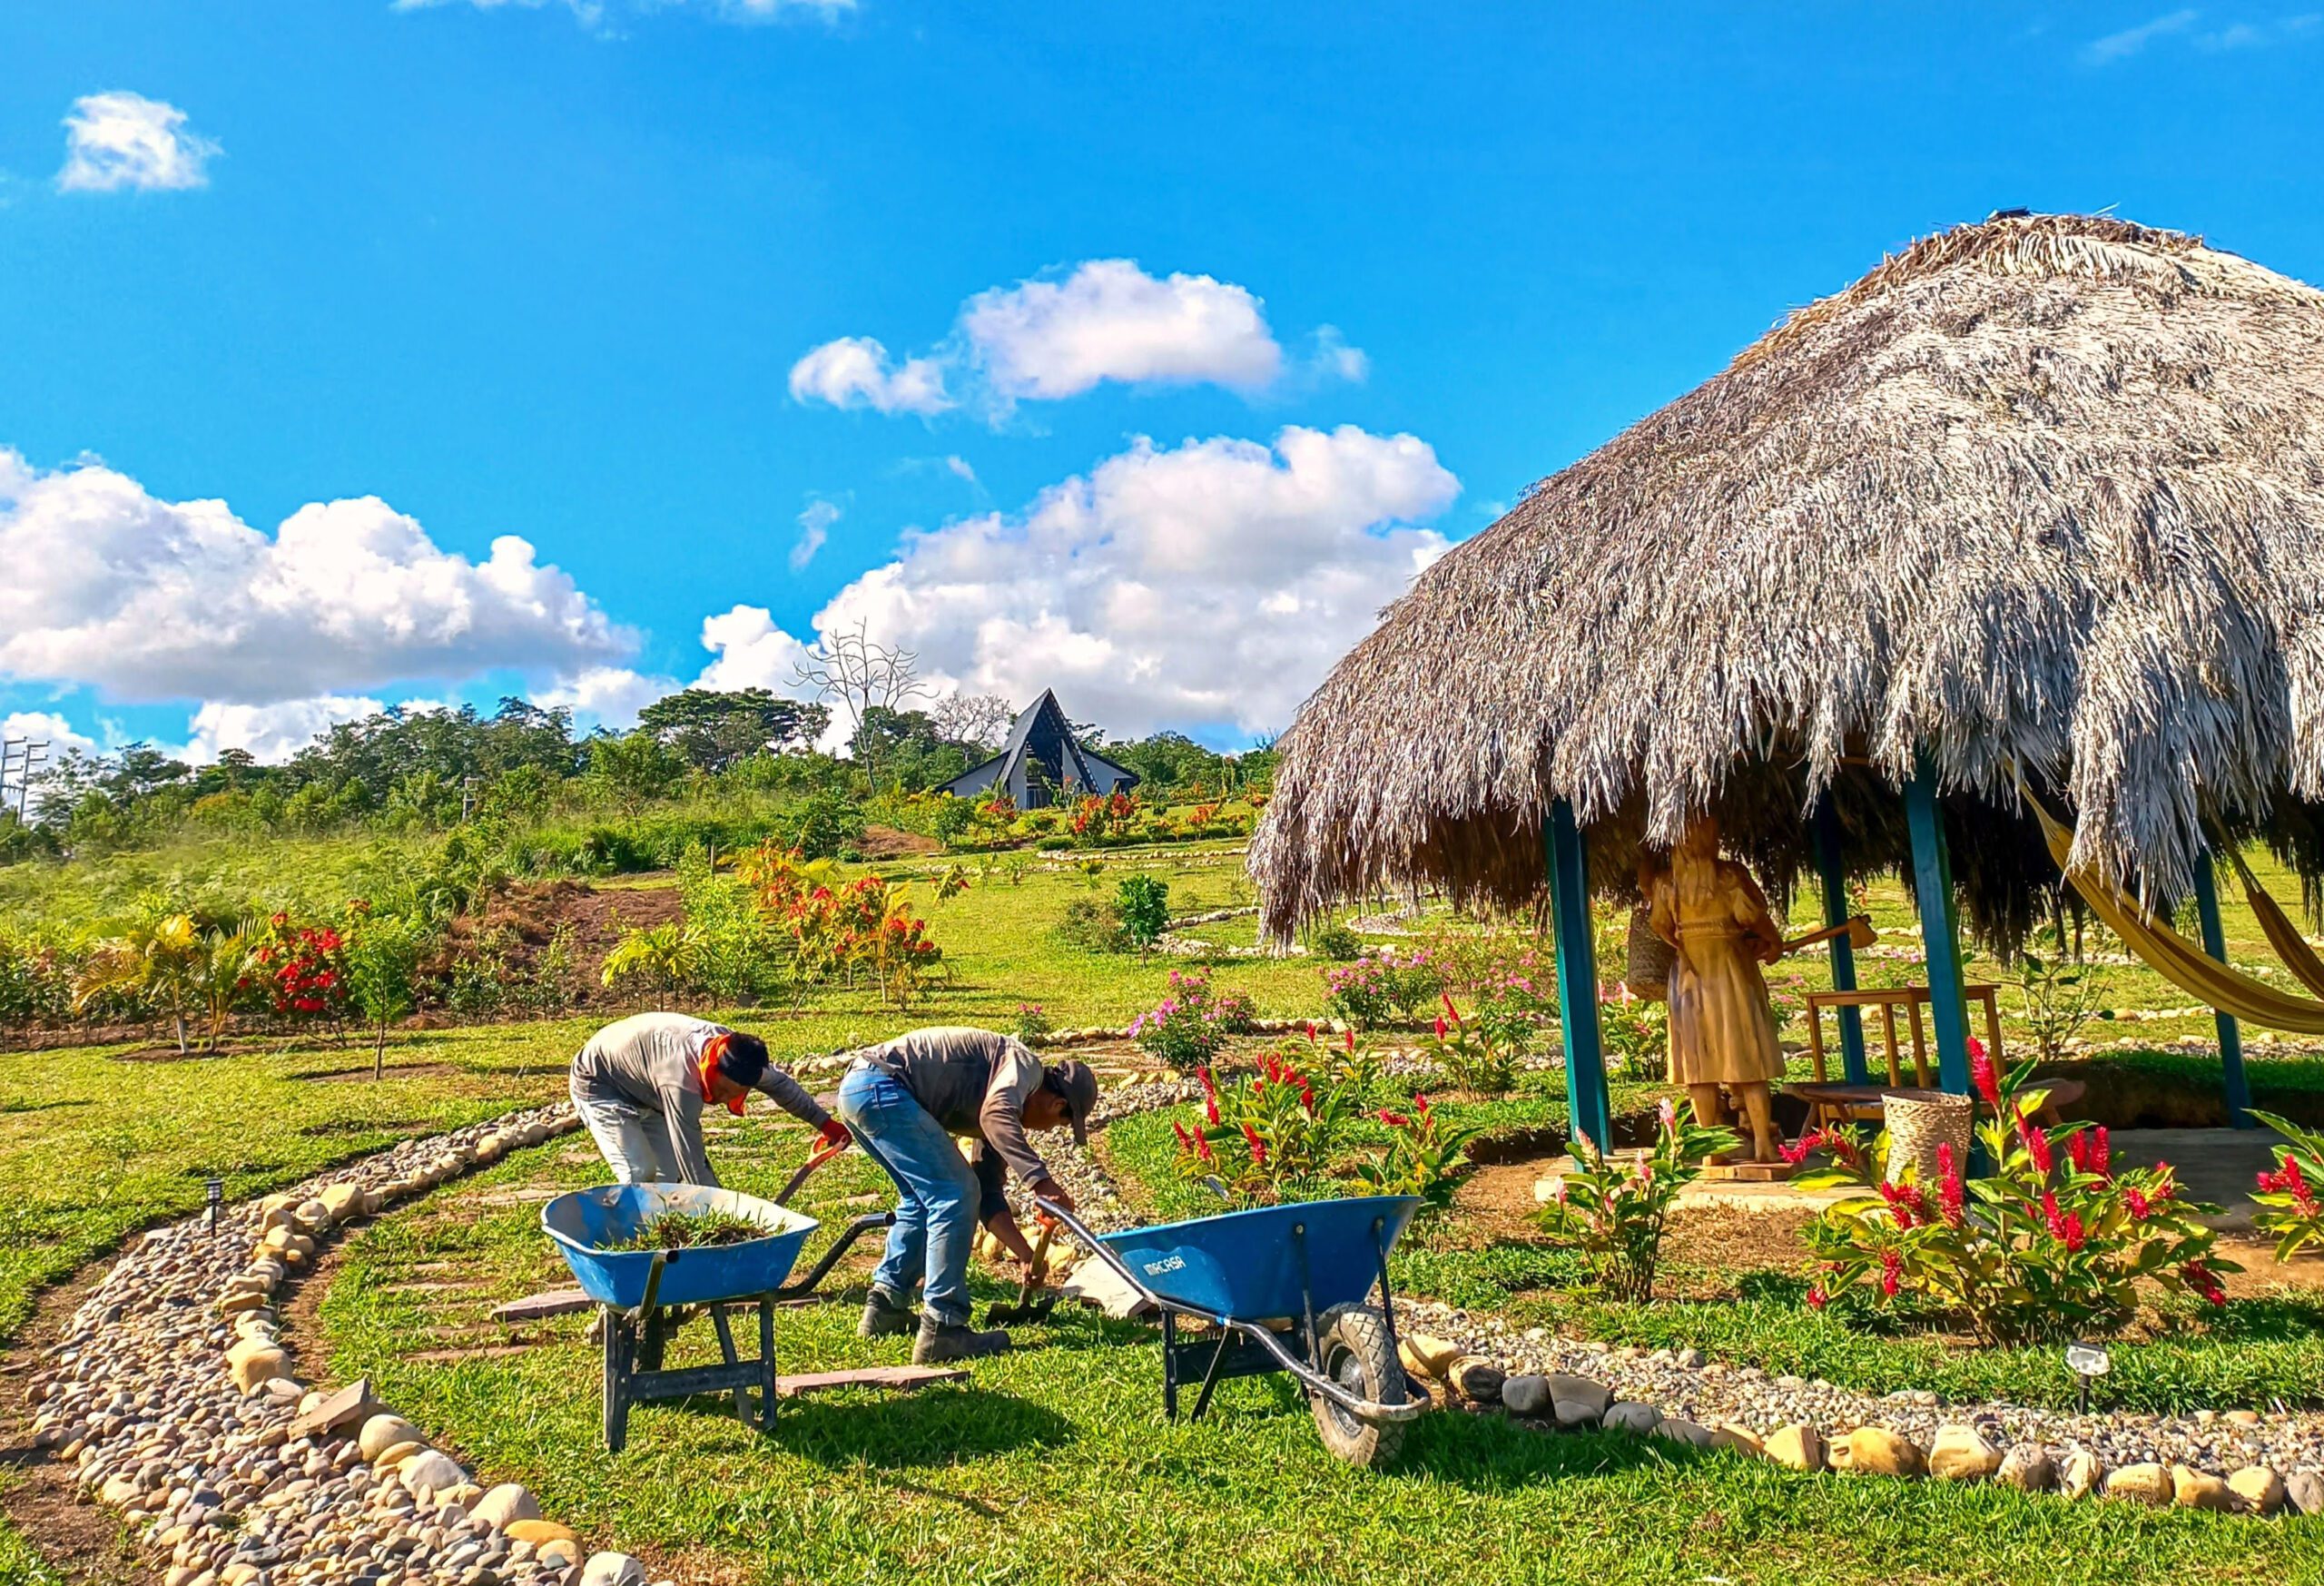 Zona El Parque del condominio estilo resort Yanashpa Village en Tarapoto, con juegos, ajedrez gigante, zona de fogata y un paisajismo